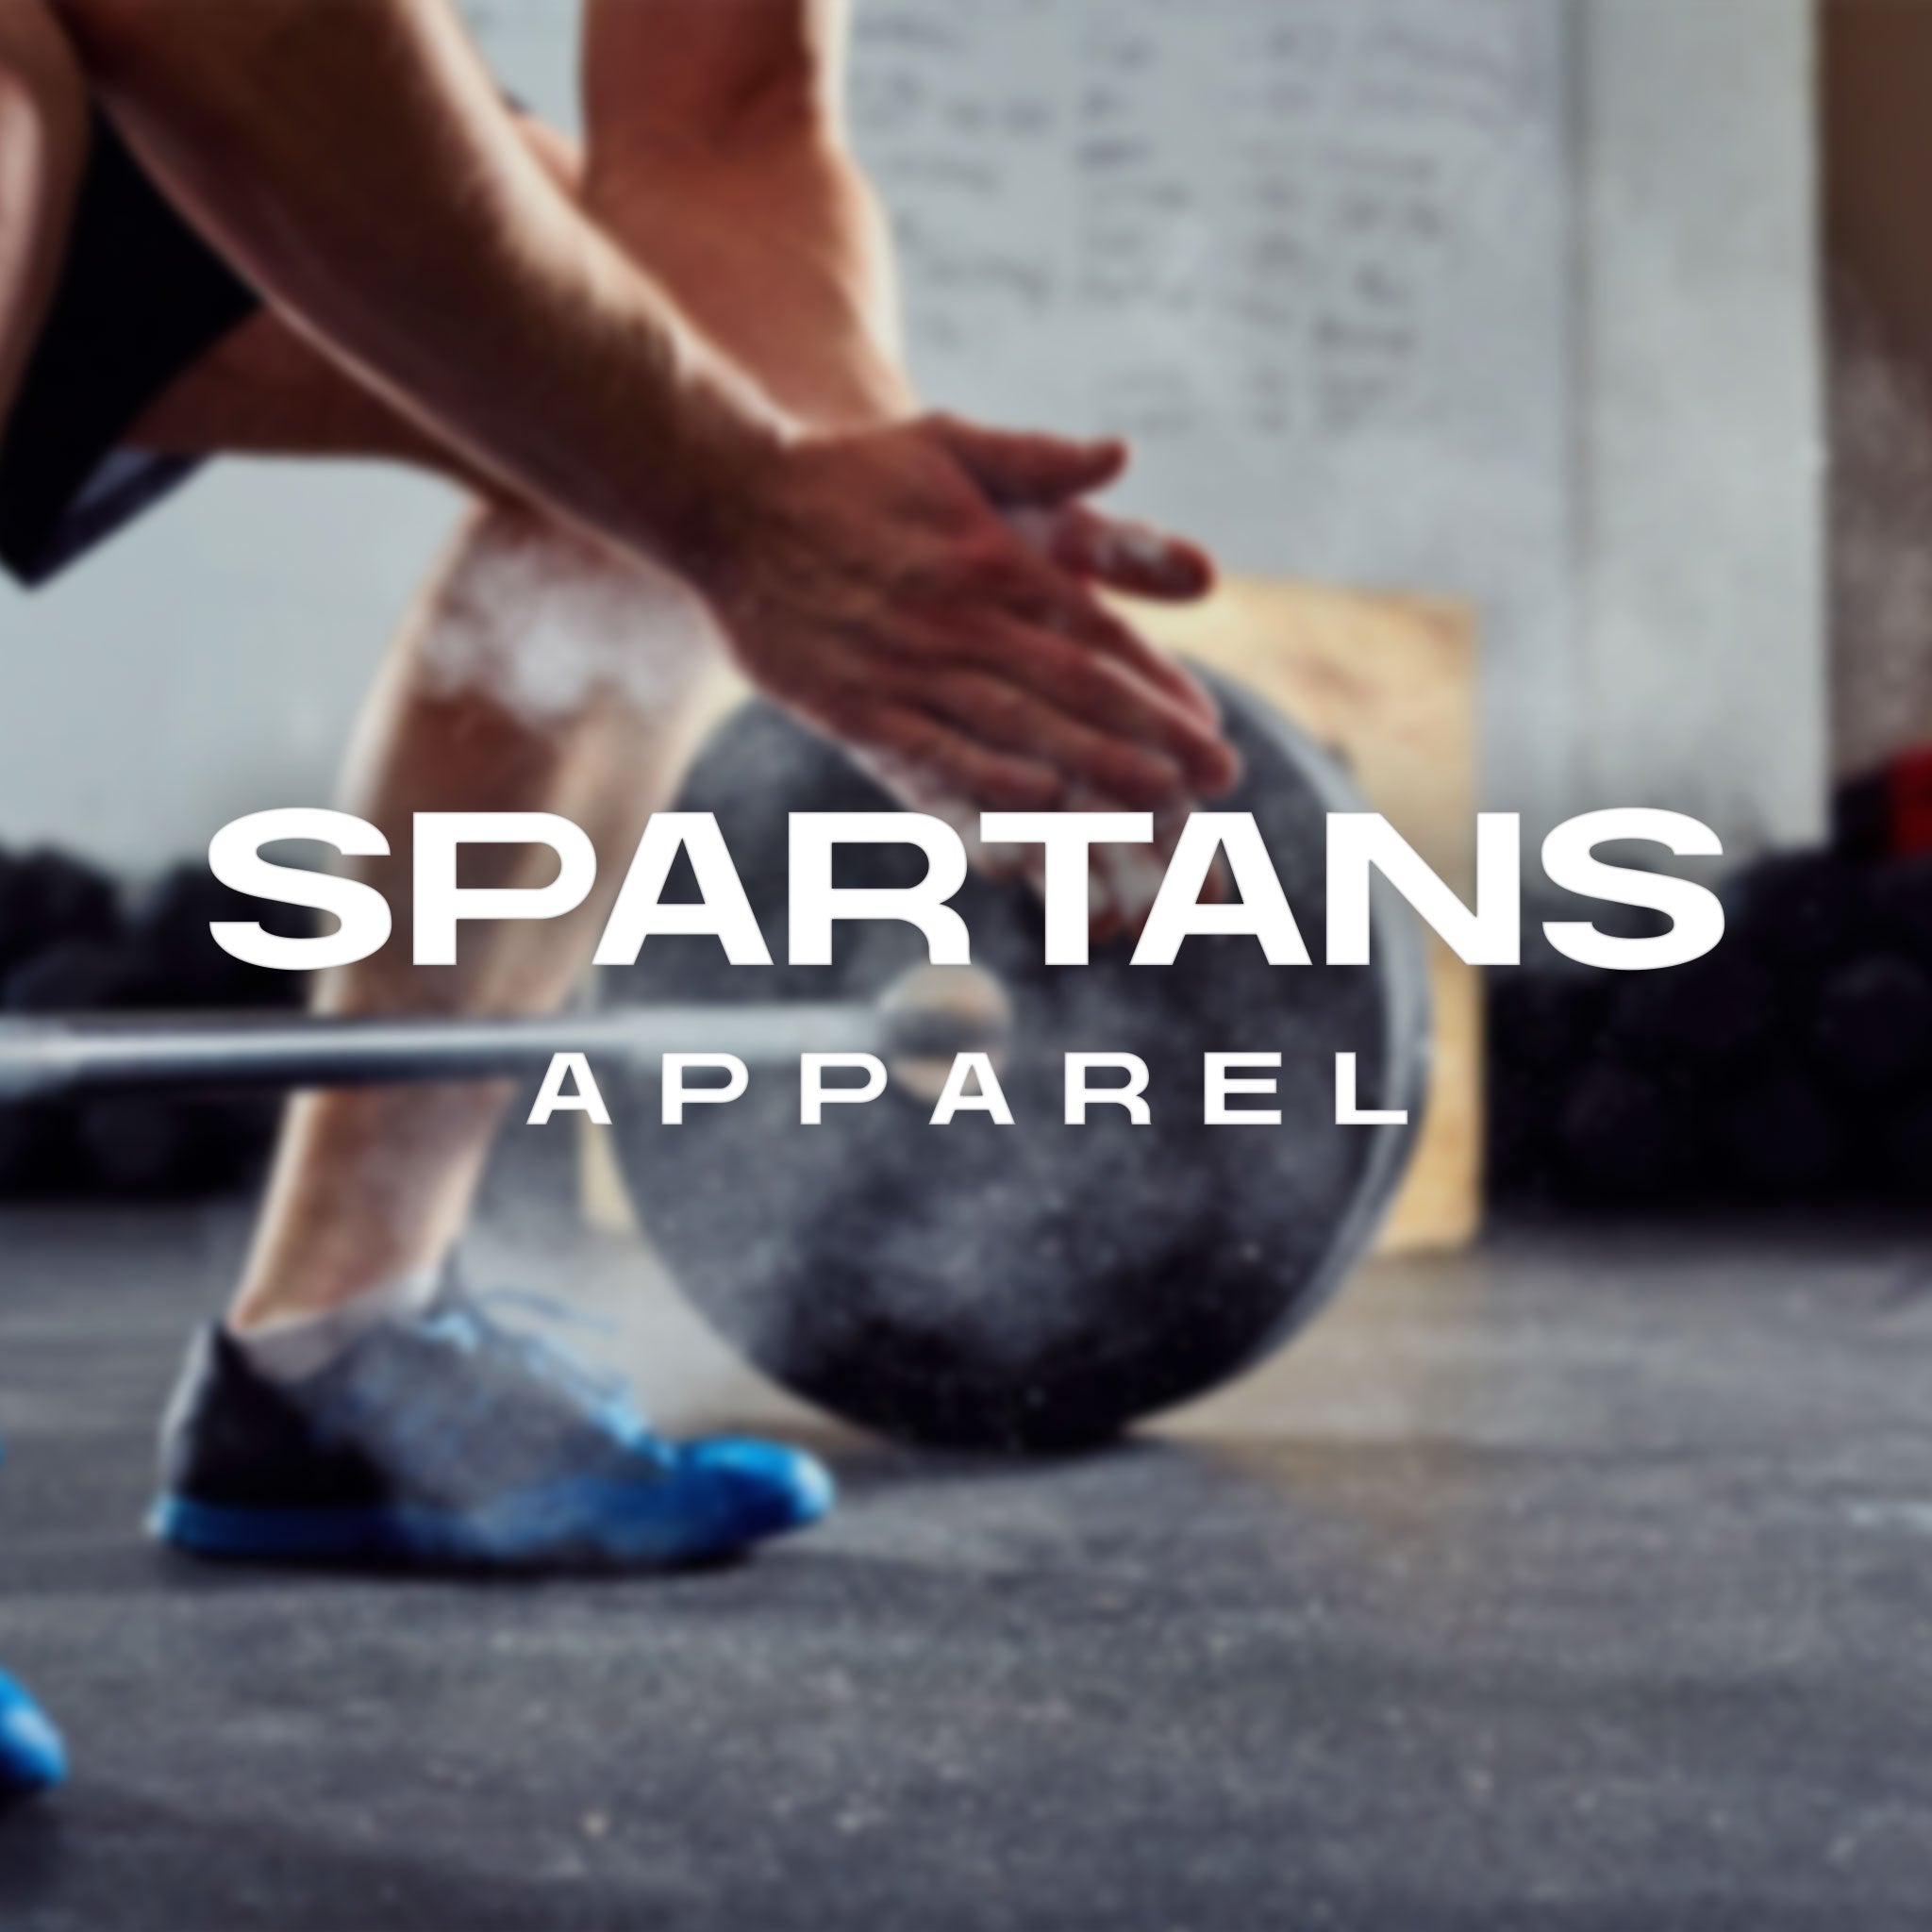 Spartans Apparel